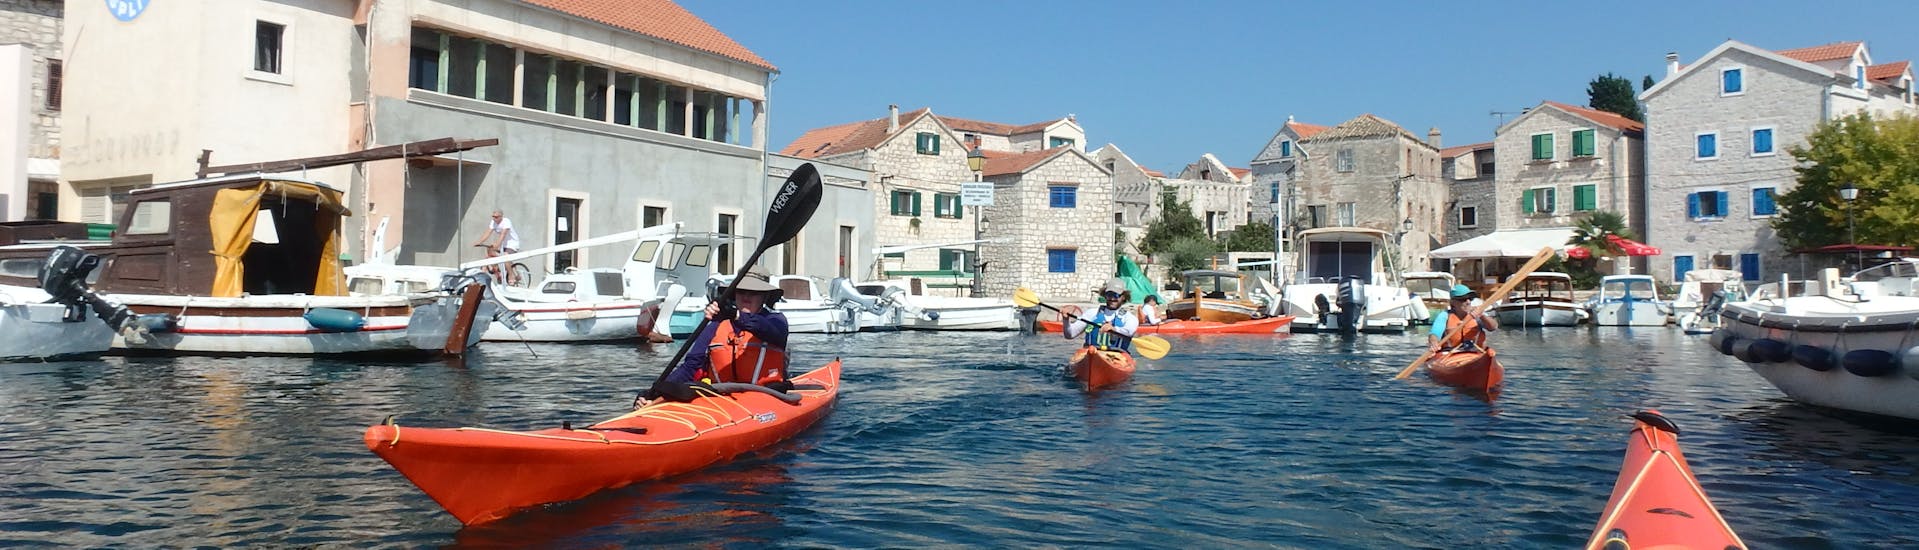 Teilnehmer der Kajaktour von Zlarin zu den Inseln vor Šibenik - Ganztägig wie sie die Toru auf dem Wasser genießen.